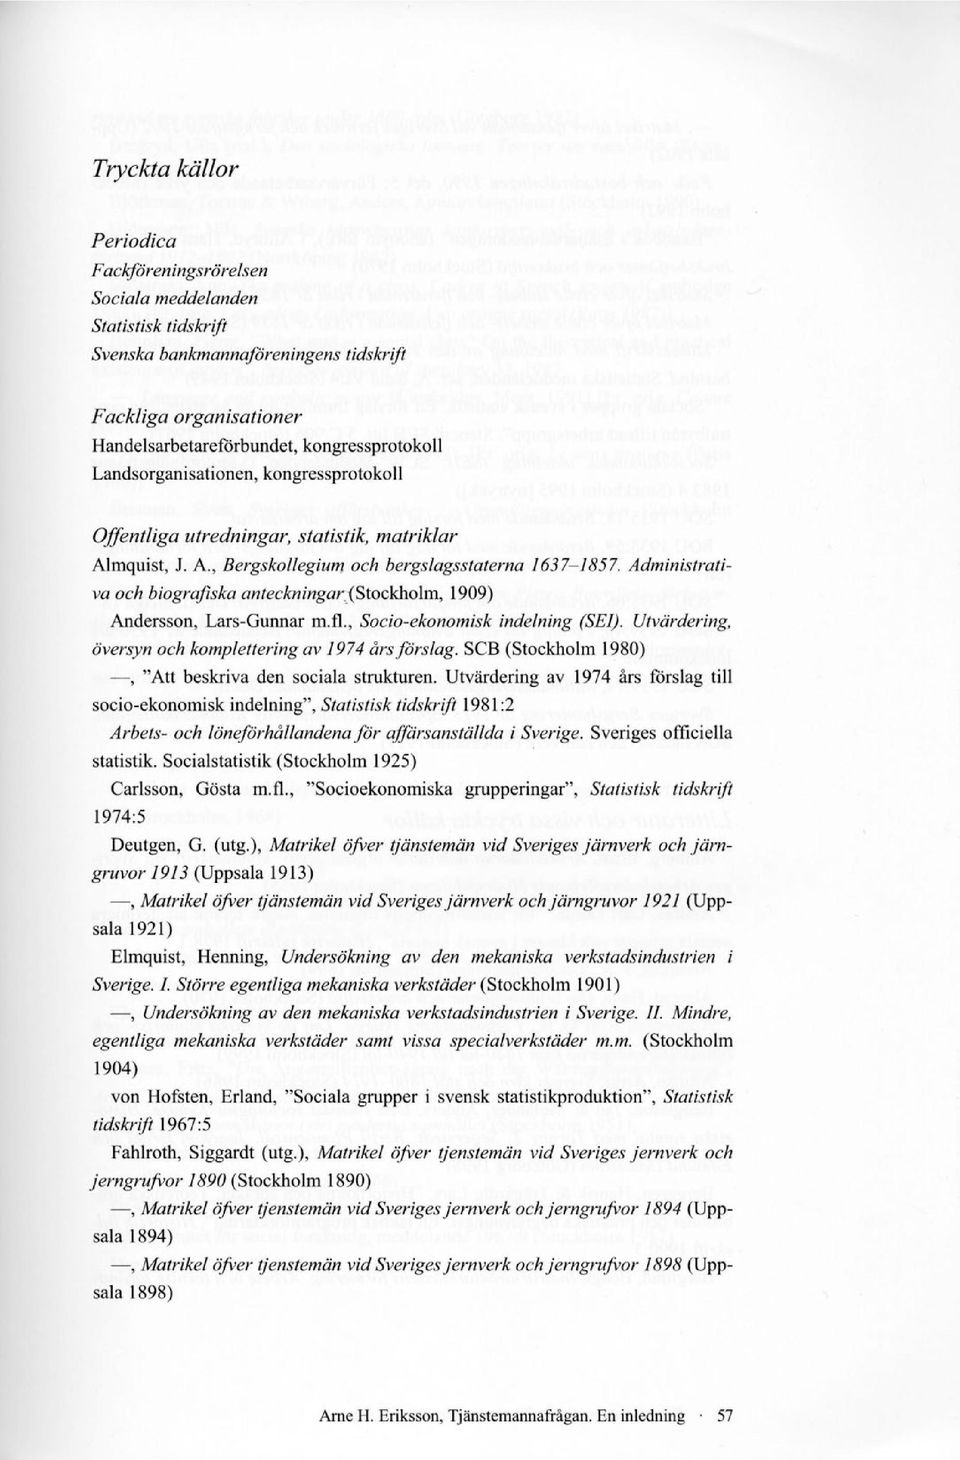 Administrativa och biografiska anteckningar (Stockholm, 1909) Andersson, Lars-Gunnar m.fl., Socio-ekonomisk indelning (SEI). Utvärdering, översyn och komplettering av 1974 års förslag.